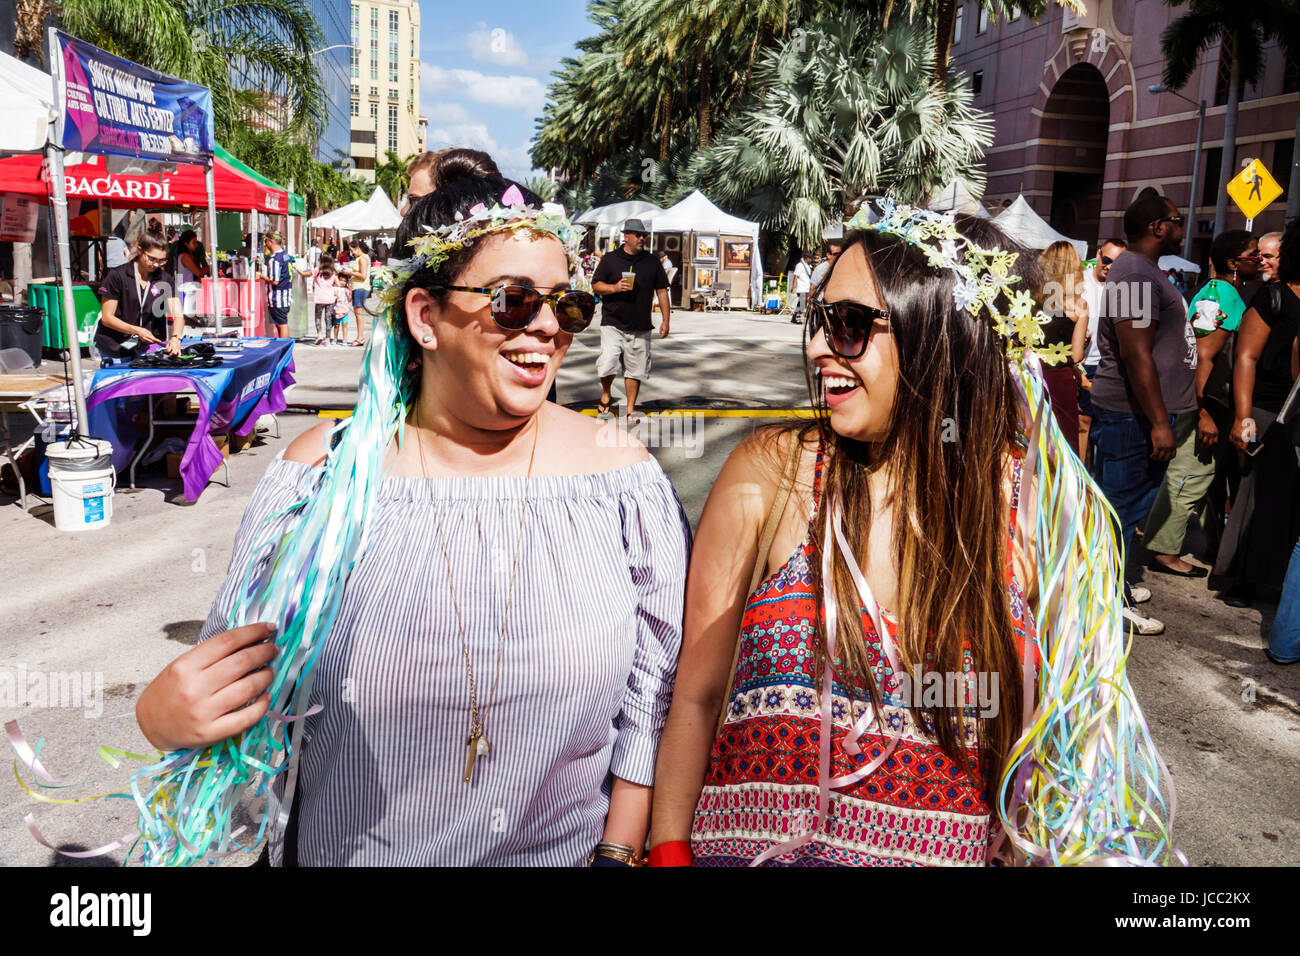 Florida Coral Gables, Miami, Carnaval Miami, Karneval, Straßenfest, lateinamerikanische Kulturfeier, weibliche Frauen, hispanische Freunde, Wandern, Bummeln, gi Stockfoto